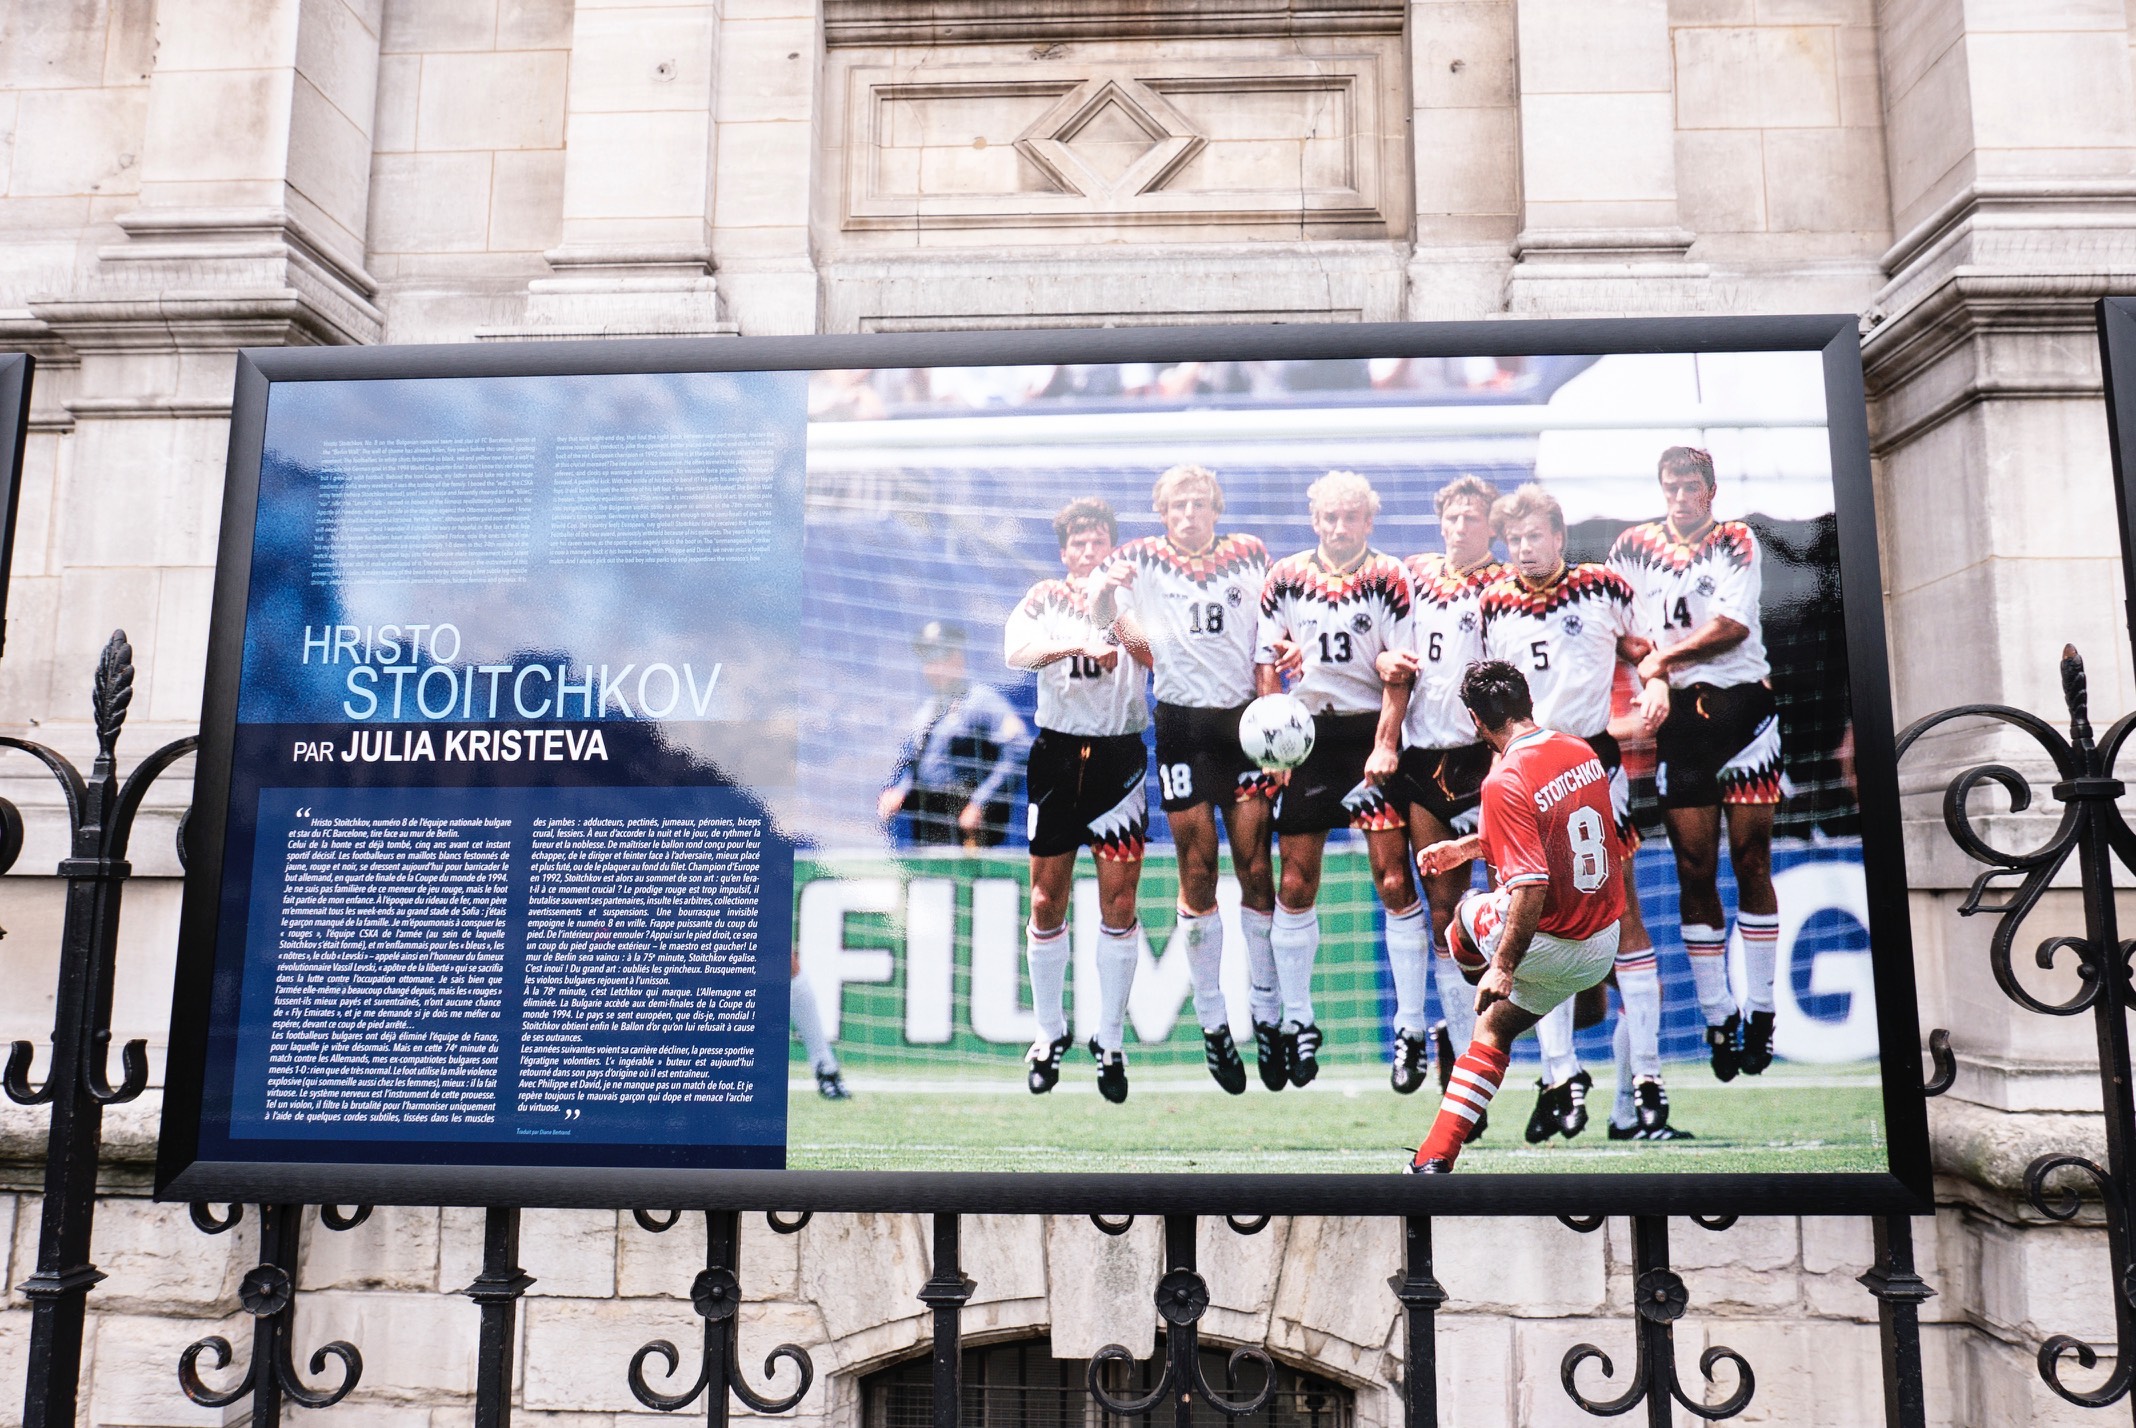 Julia Kristeva - Stoitchkov -  Exposition « Football de légendes, une histoire européenne », Parvis de l'Hôtel de Ville, Paris